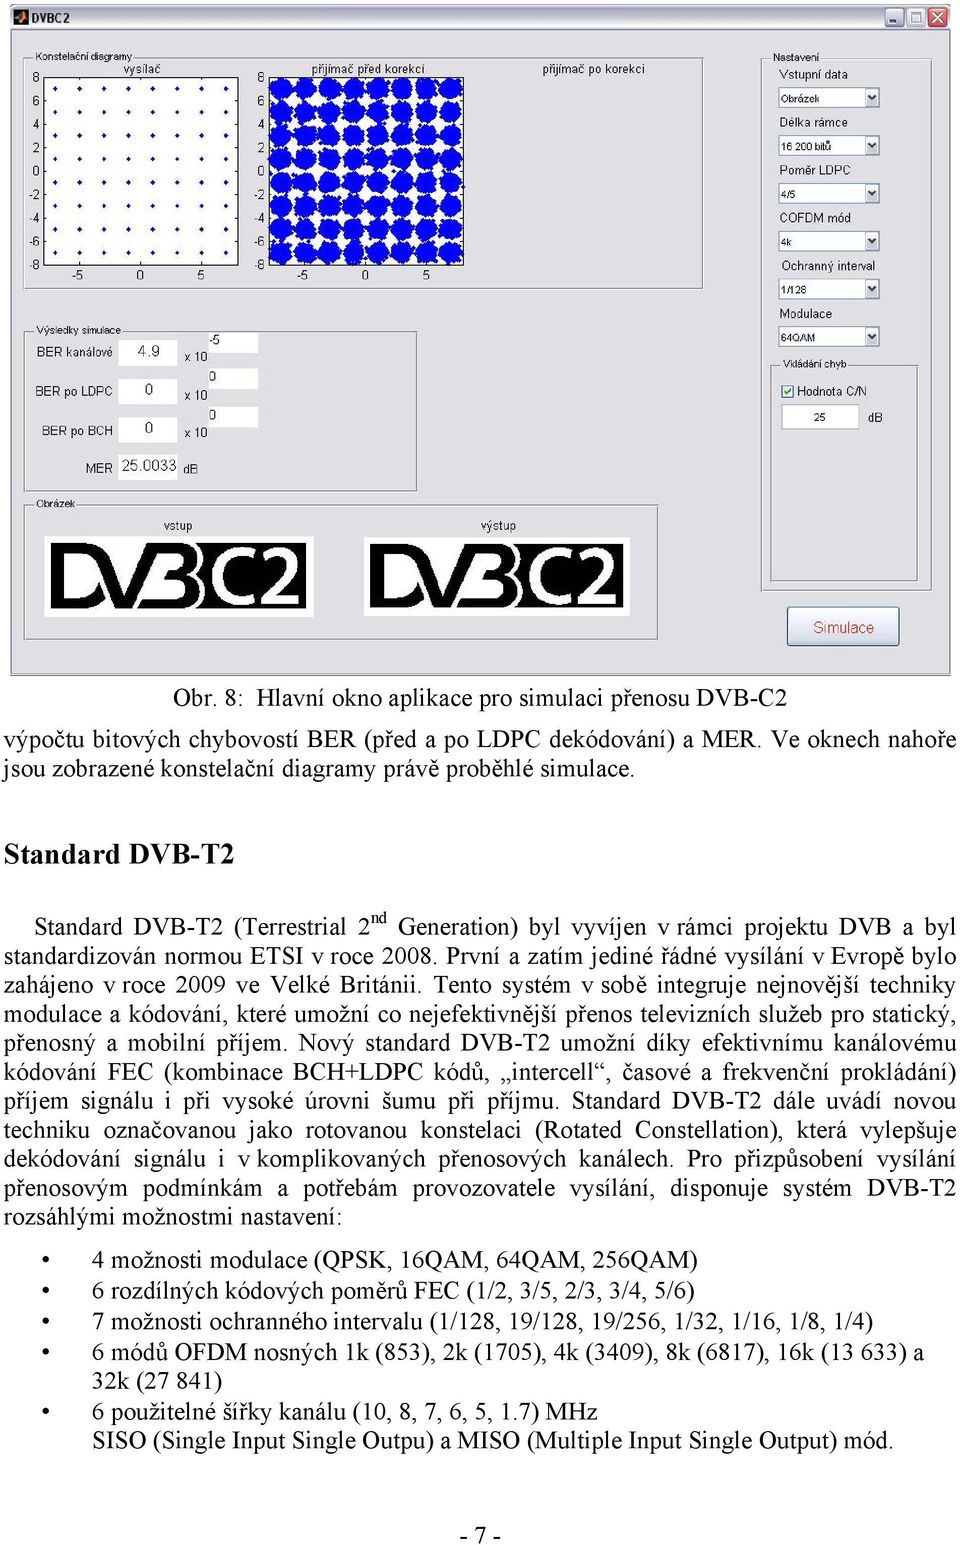 Standard DVB-T2 Standard DVB-T2 (Terrestrial 2 nd Generation) byl vyvíjen v rámci projektu DVB a byl standardizován normou ETSI v roce 2008.